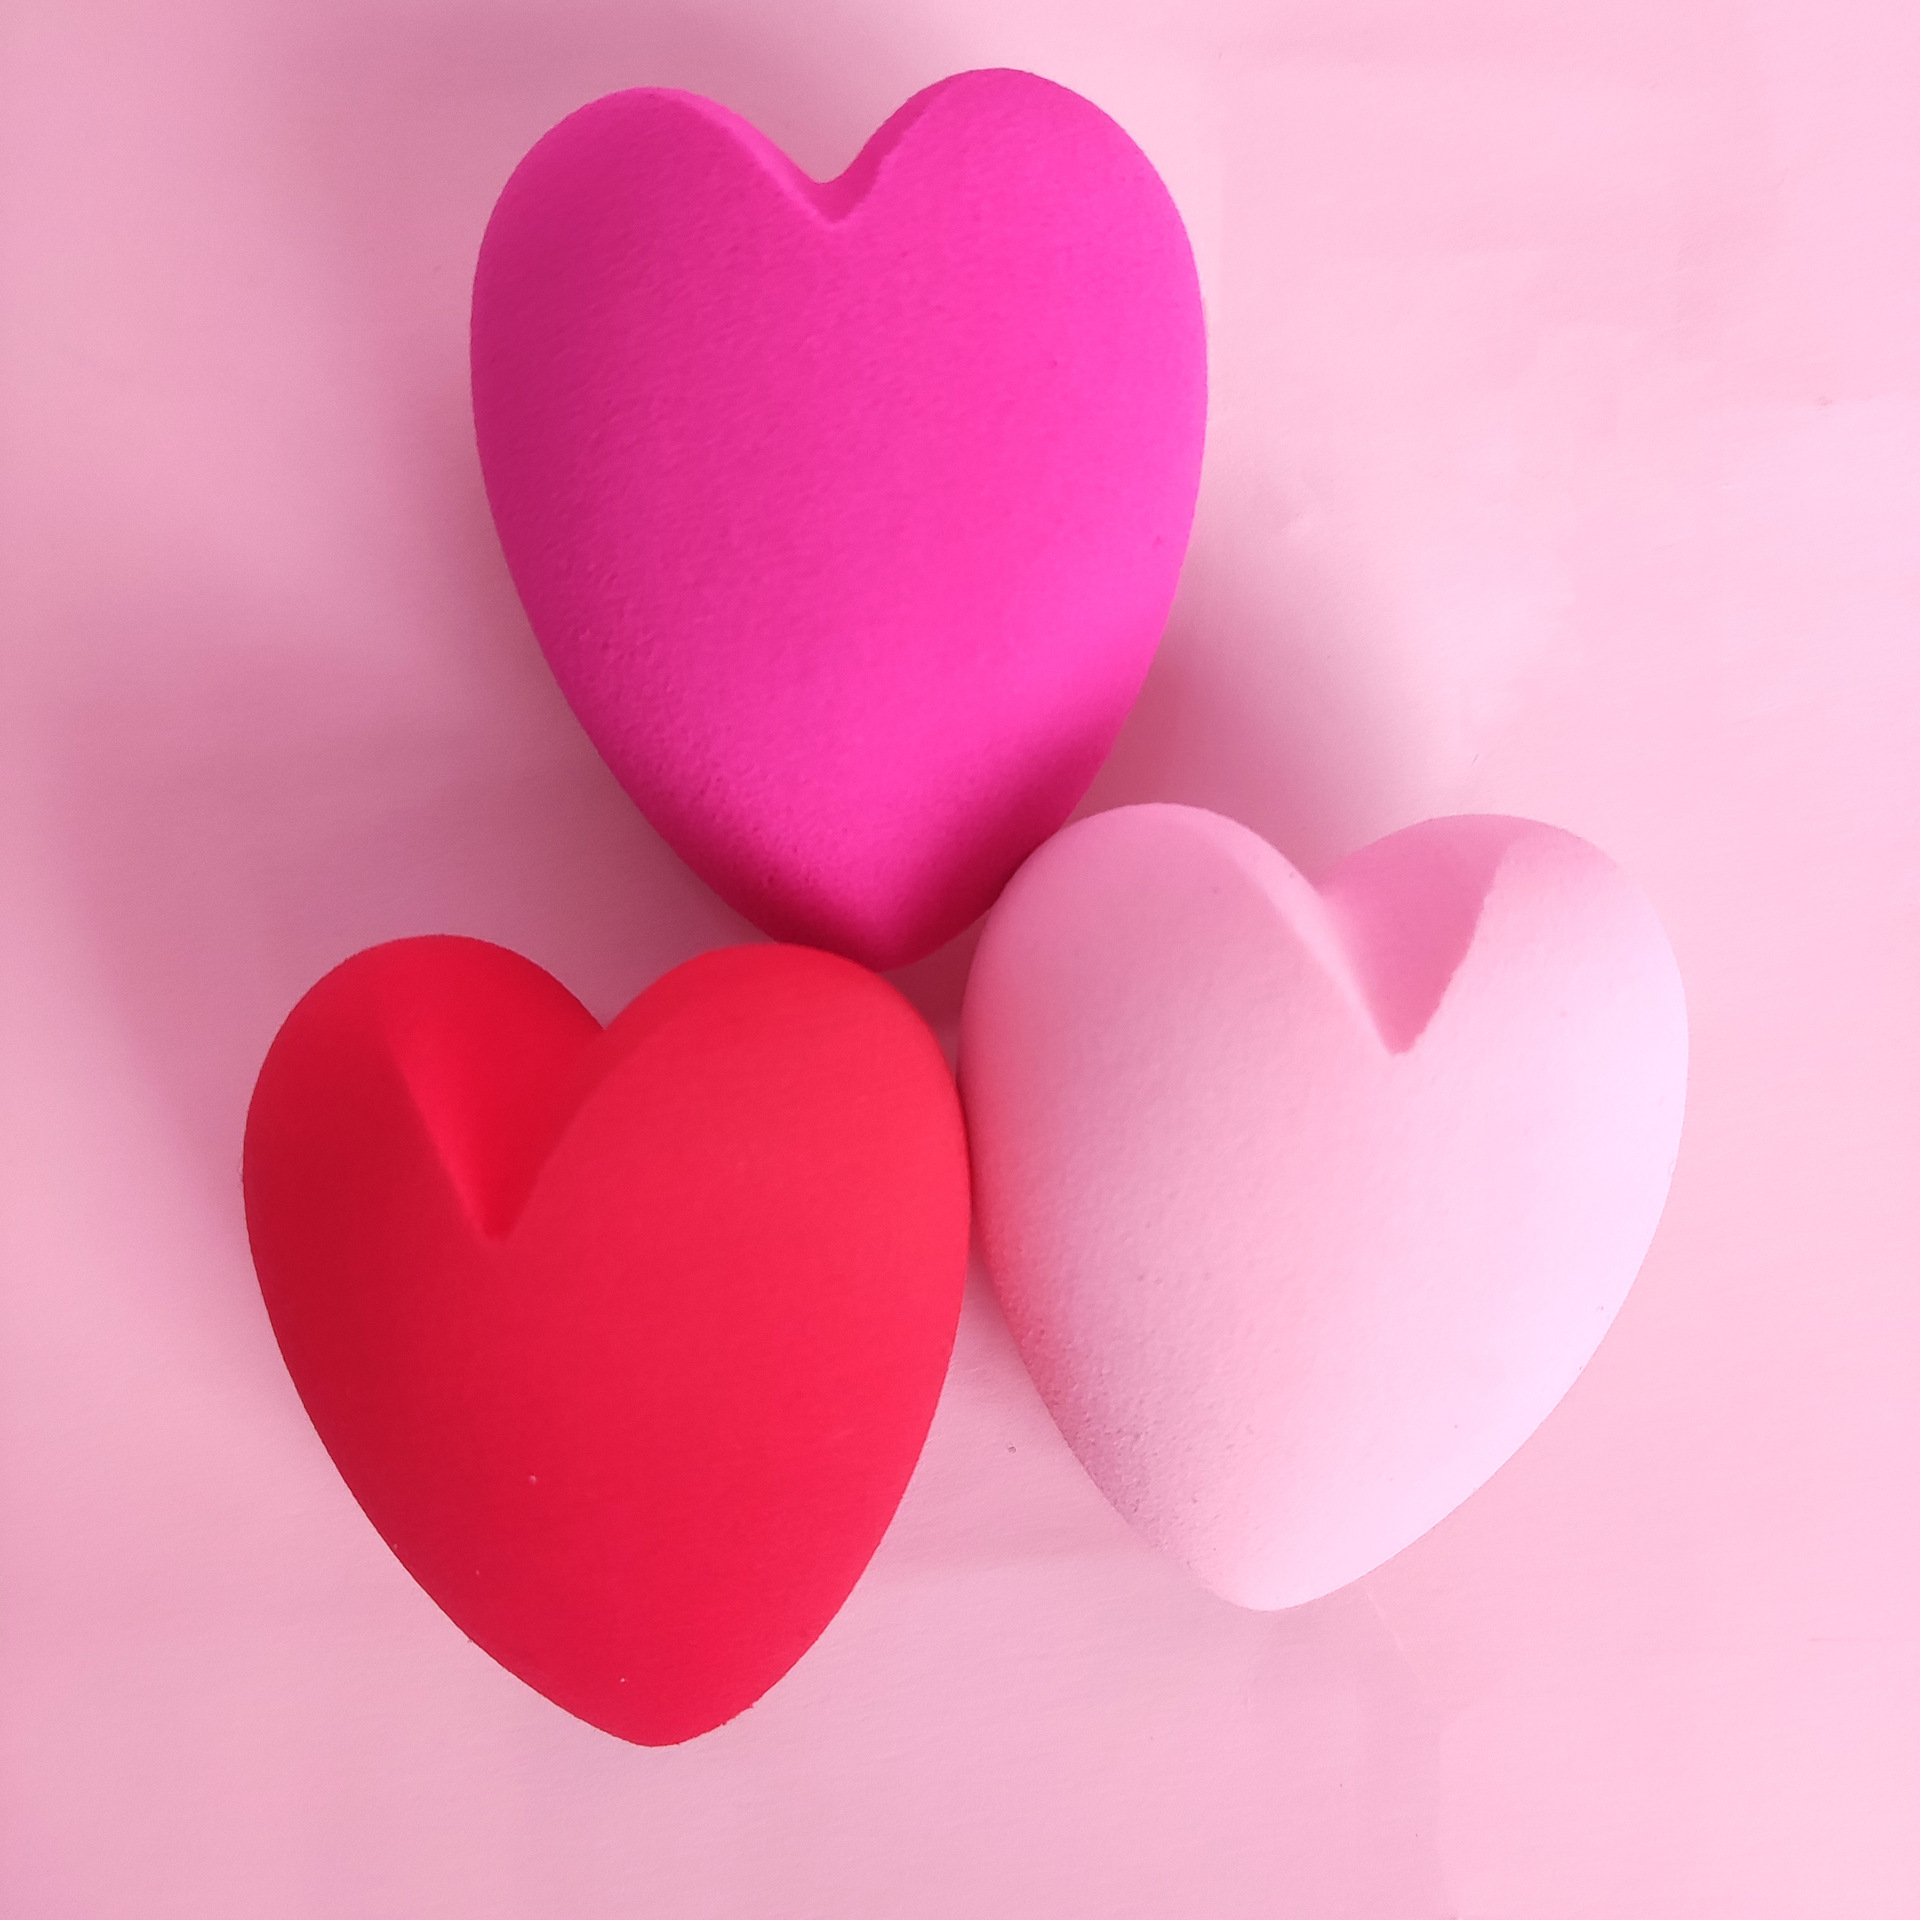 Uusi 3D Love sydämen muotoinen ruusunpunainen ei-lateksi meikkisienet Soft Foundation Powder Beauty Blender sieni